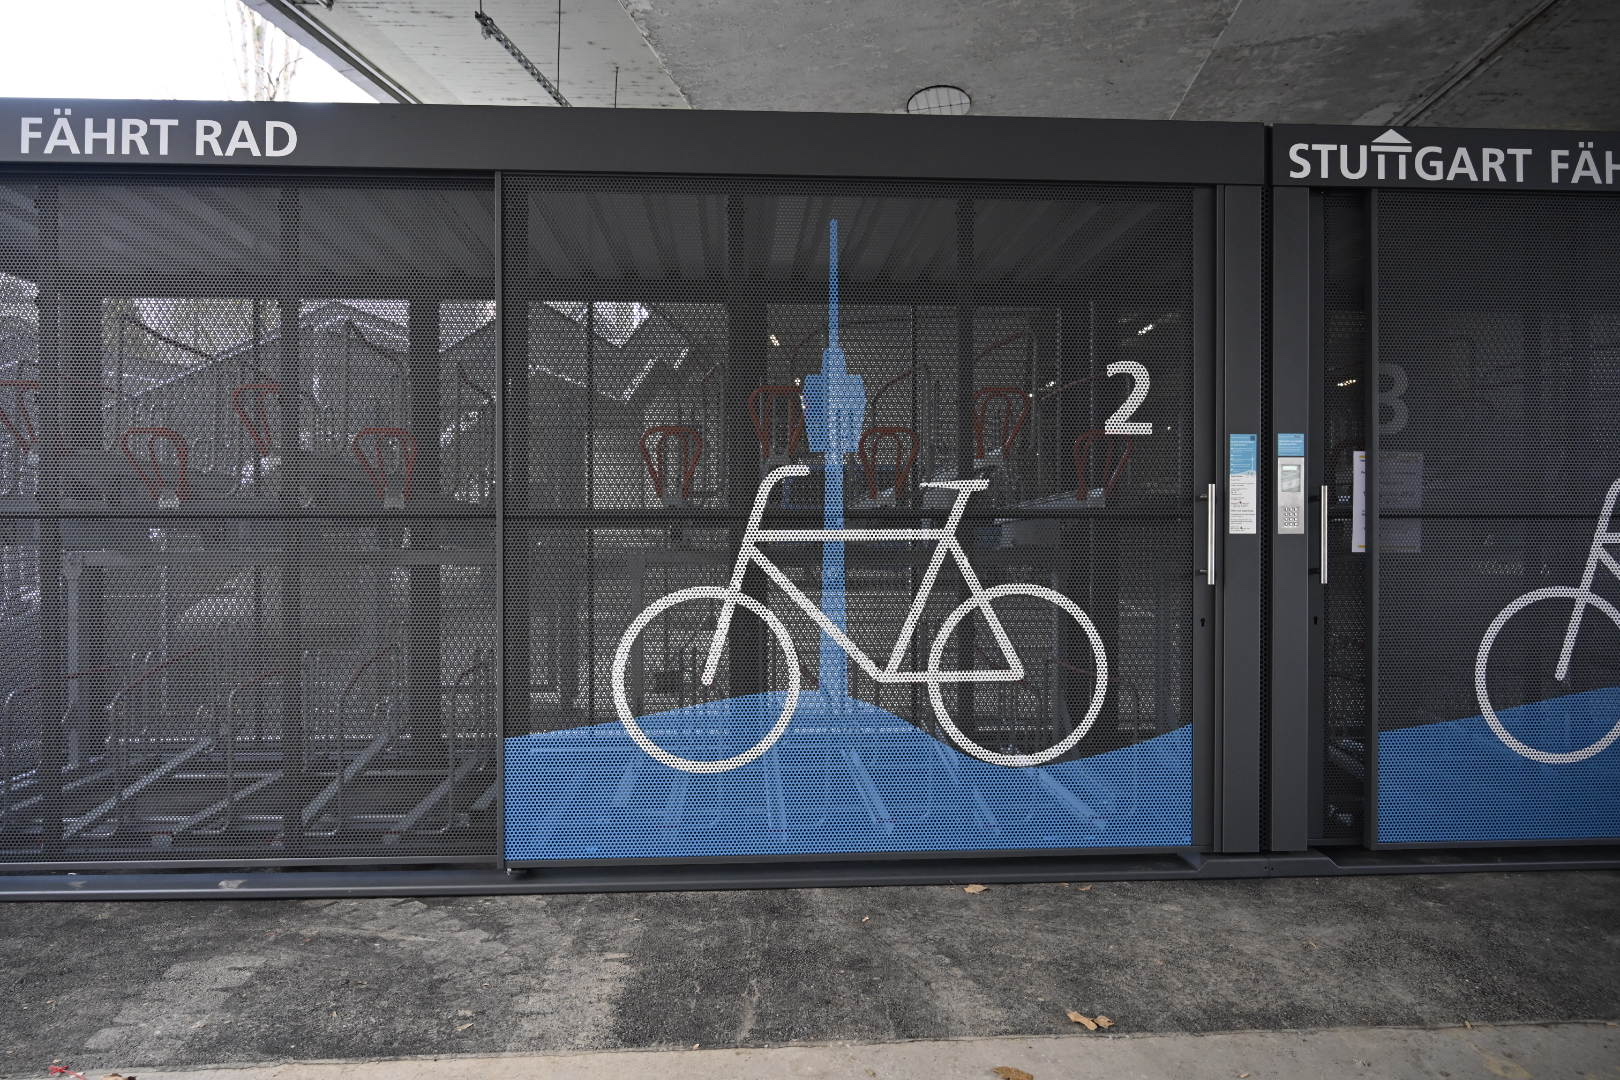 Erste Fahrrad-Sammelgarage in Stuttgart, erste Kienzler Sammelgarage fundamentfrei in Containerbauweise (mobil)